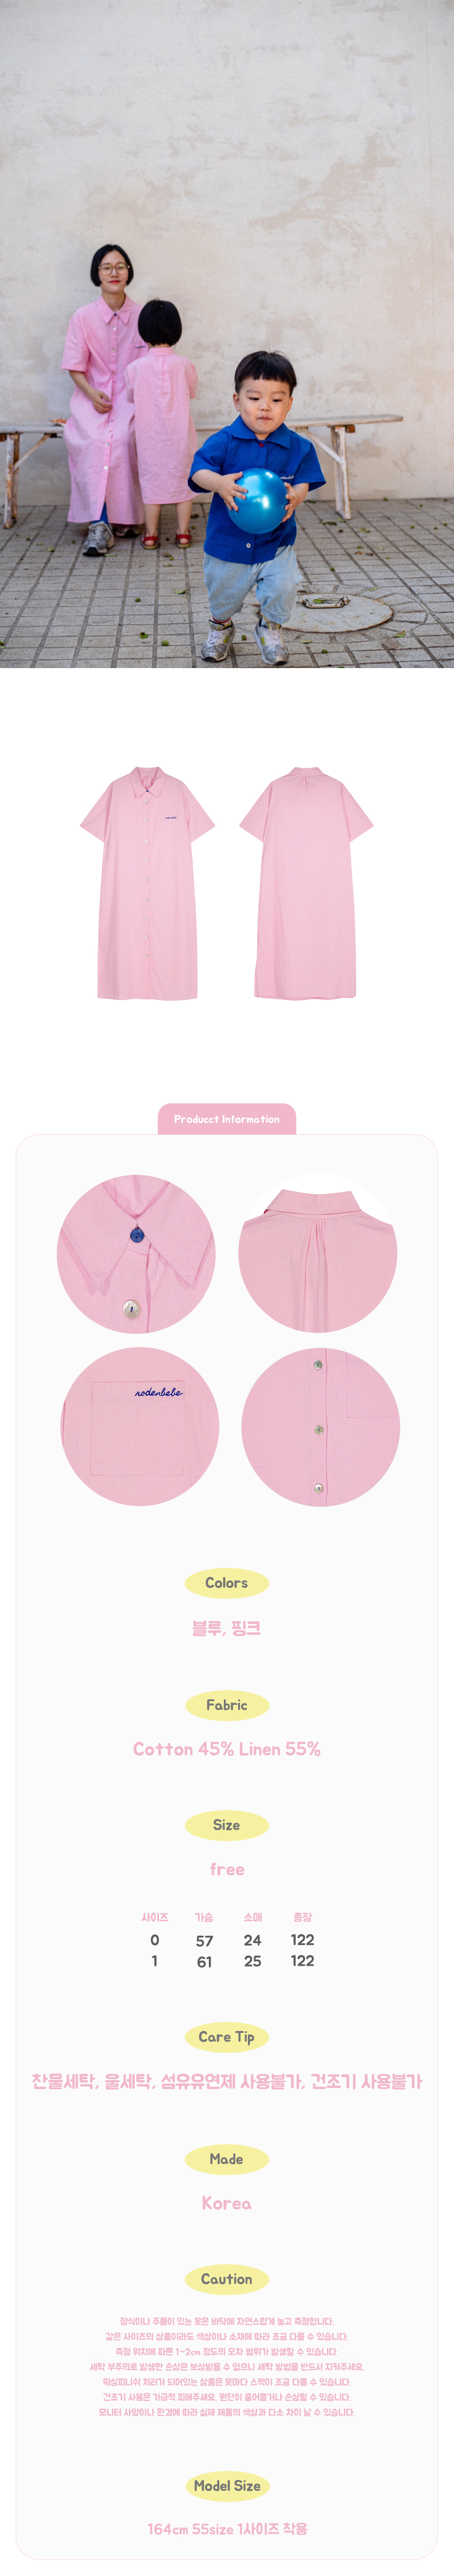 maxi_shirt_dress_pink03